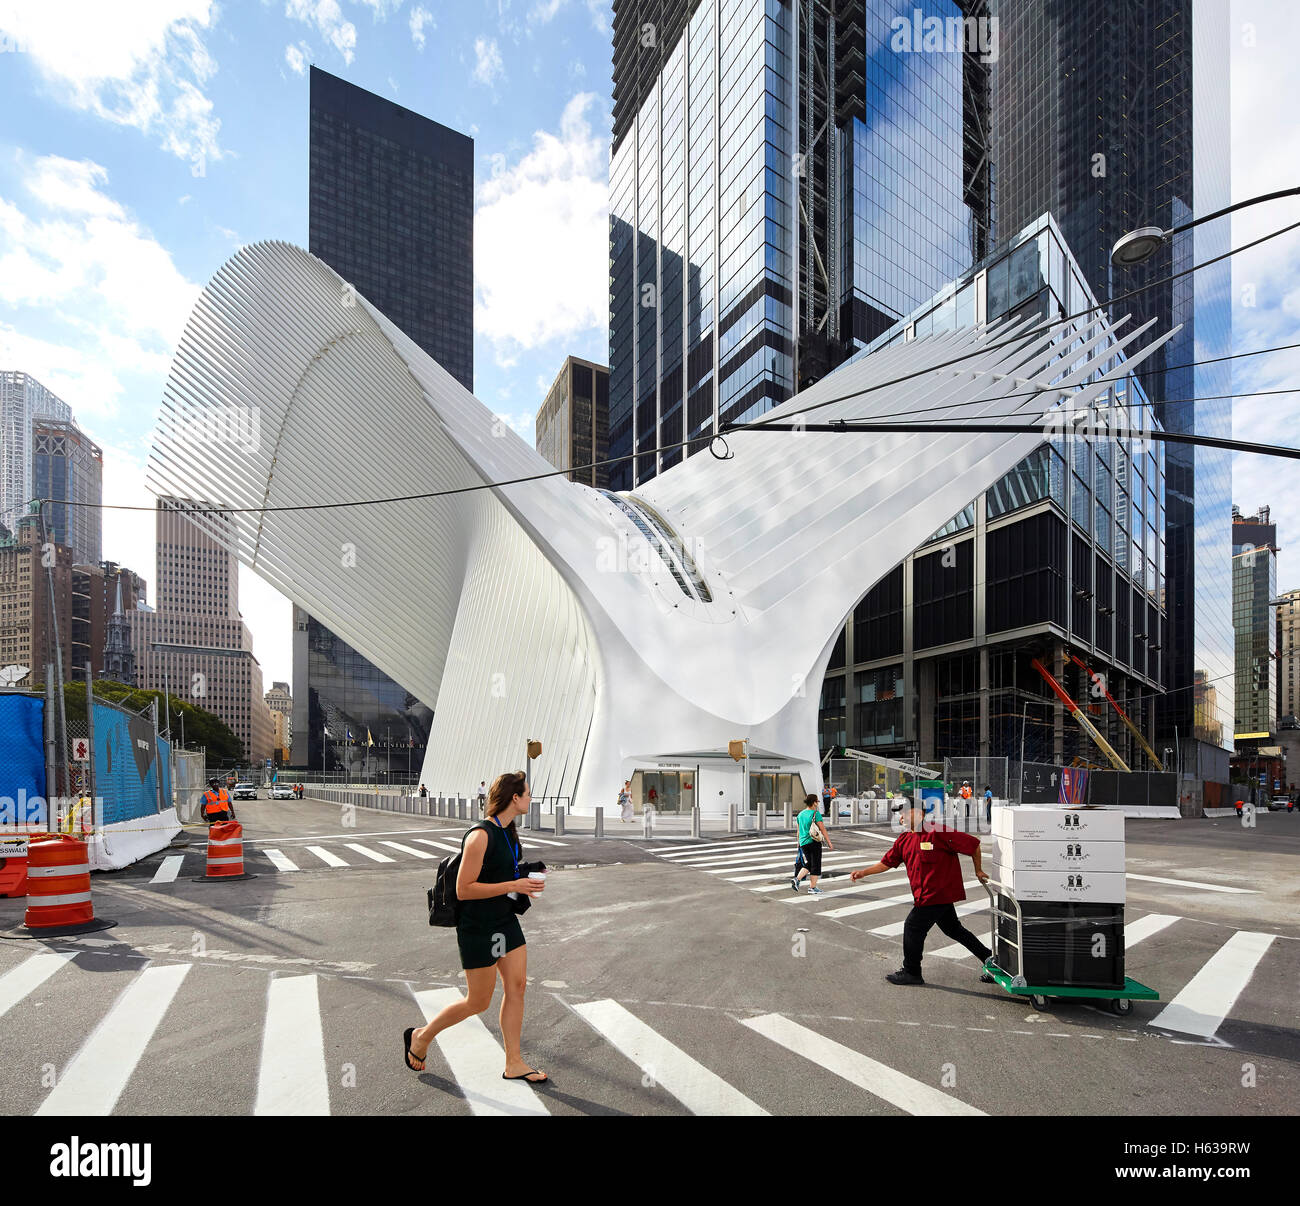 Paso de cebra con entrada desde la calle al centro de transporte. El Oculus, Centro de Transporte del World Trade Center, Nueva York, Estados Unidos. Arquitecto: Santiago Calatrava, 2016. Foto de stock